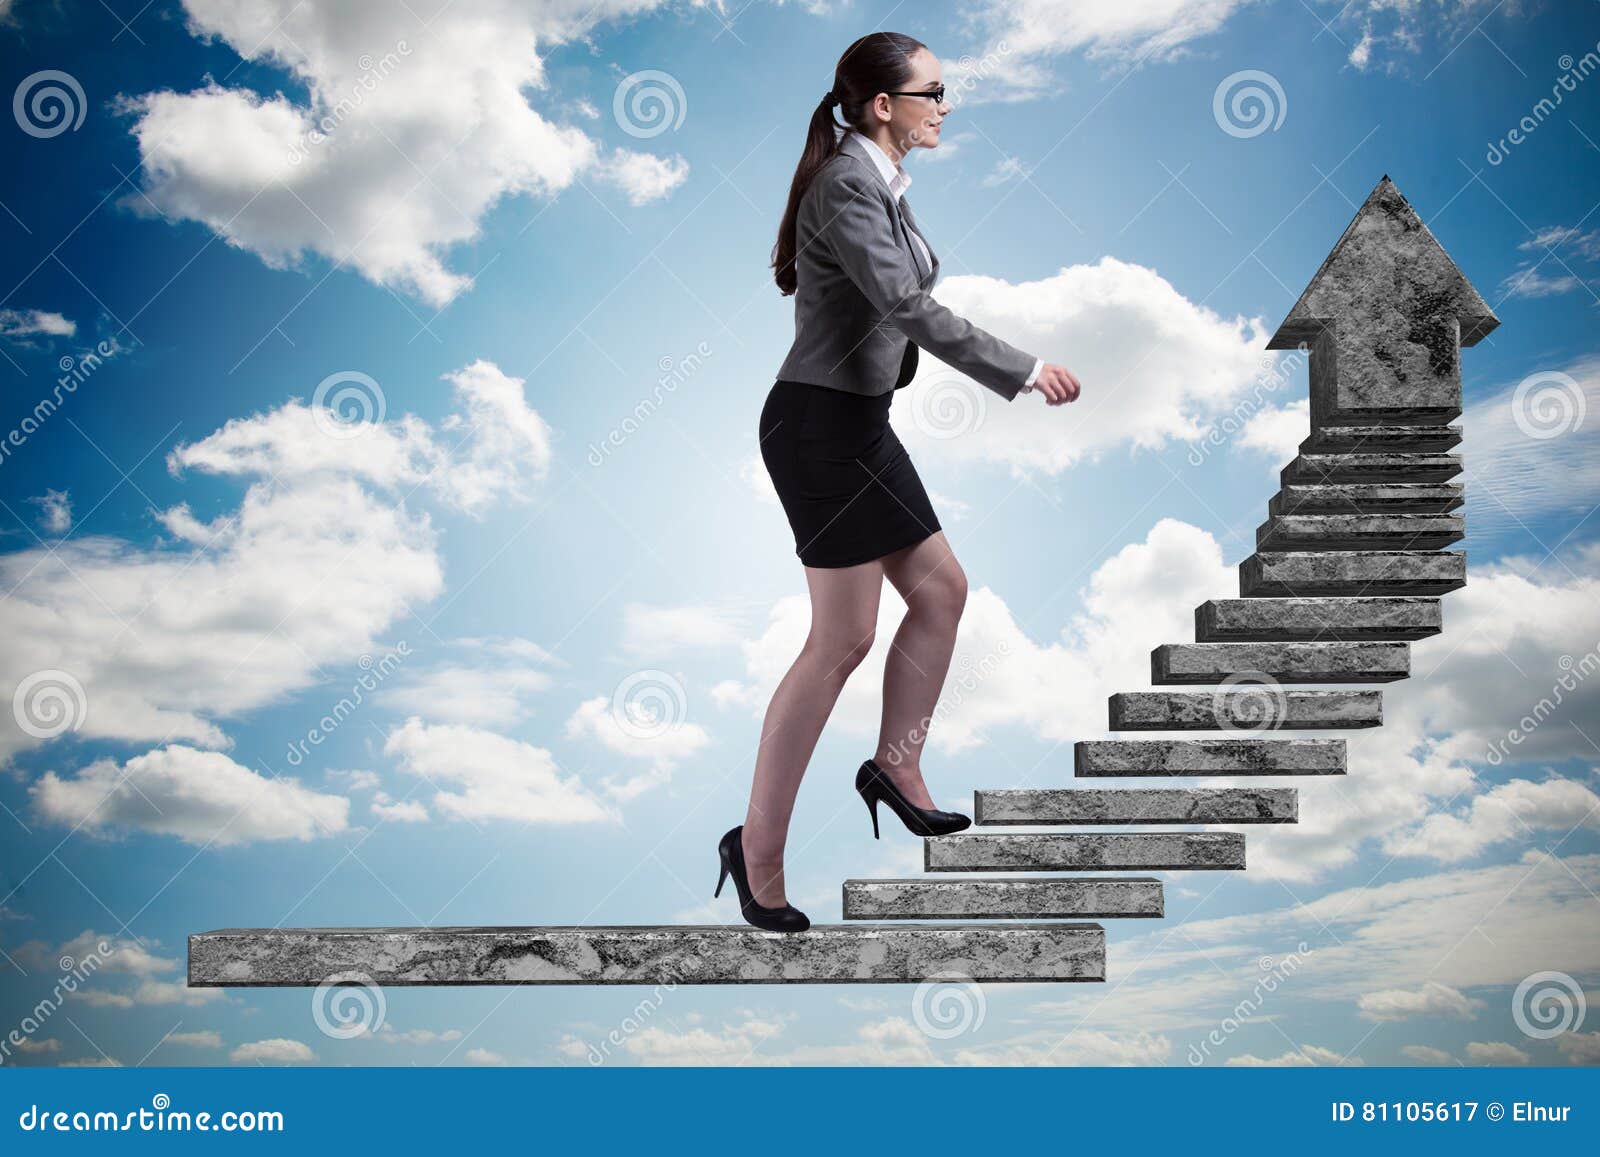 Дамы потихоньку пошли за поднимавшимся по лестнице. Девушка по карьерной лестнице. Женщина по лестнице вверх. Карьерная лестница женщины. Девушка идет по лестнице вверх.